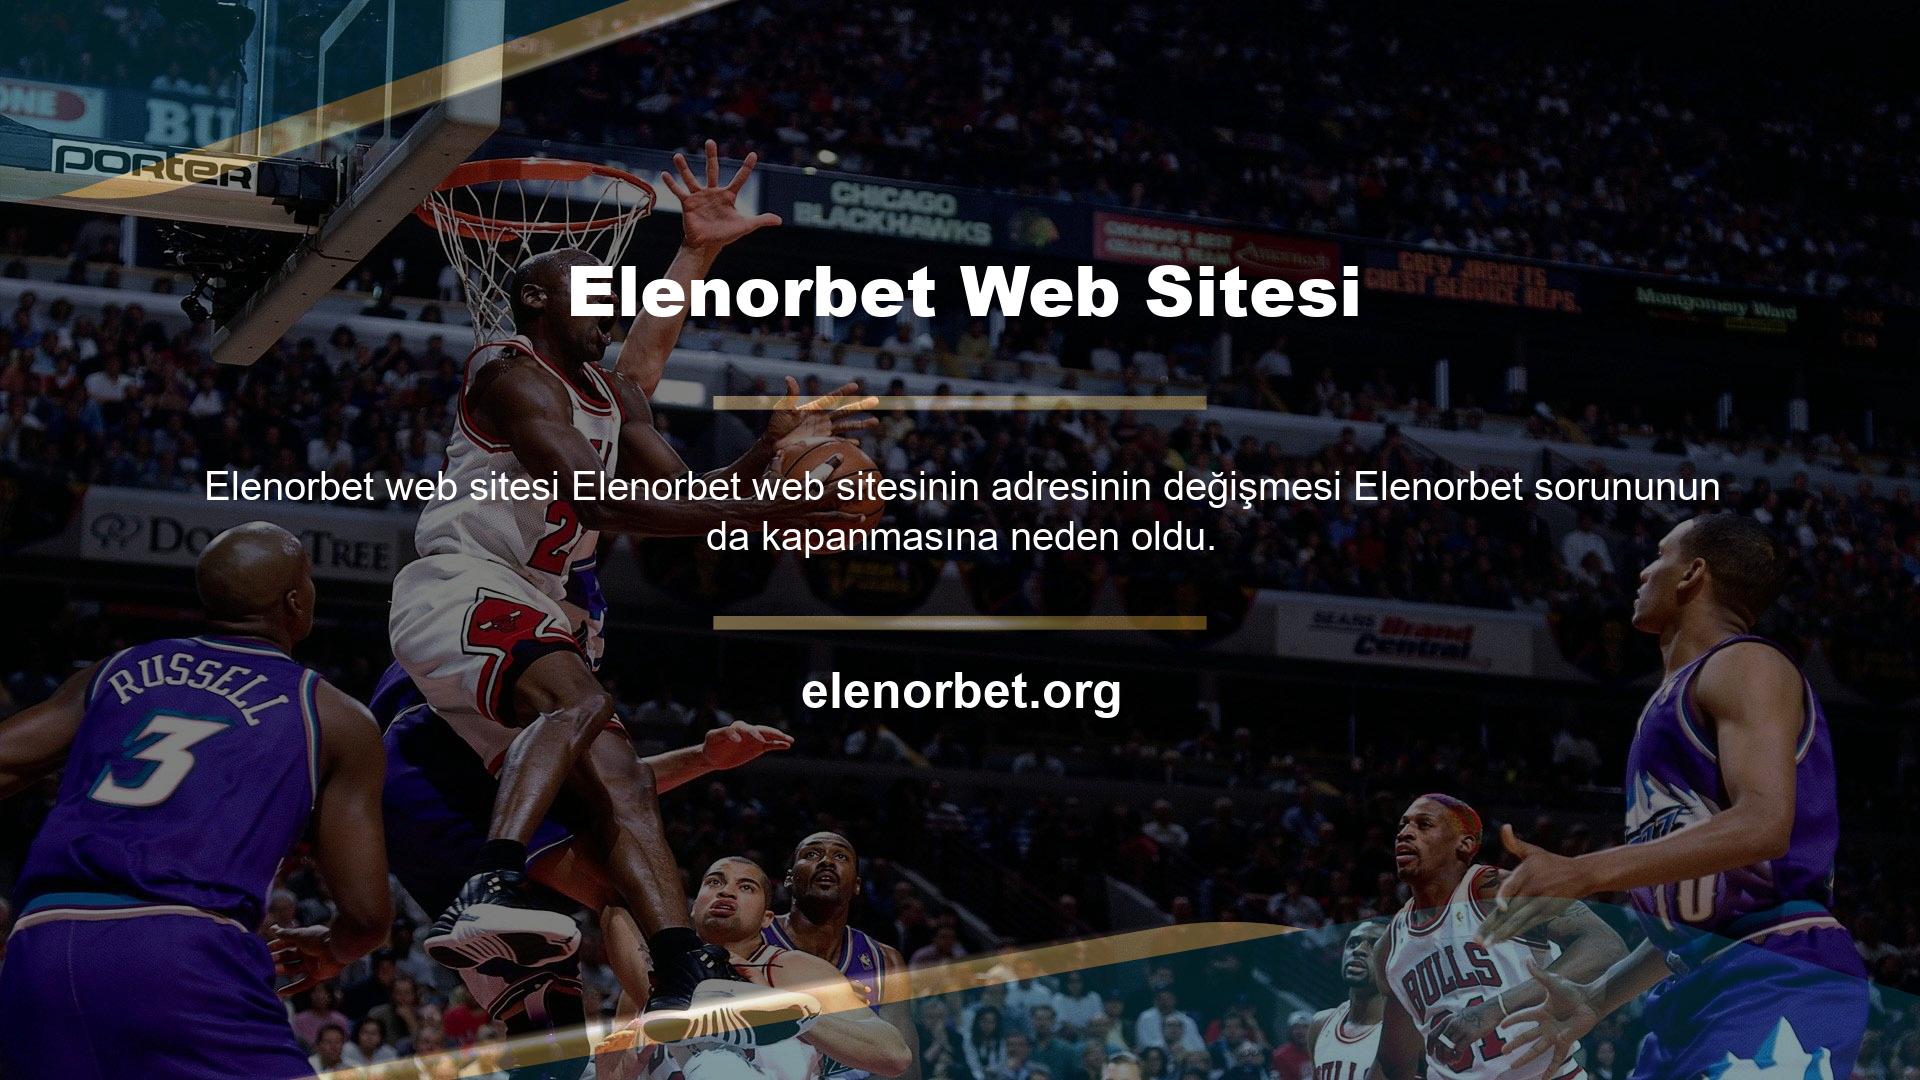 Ancak Elenorbet sitesi hiçbir şekilde kapatılamaz